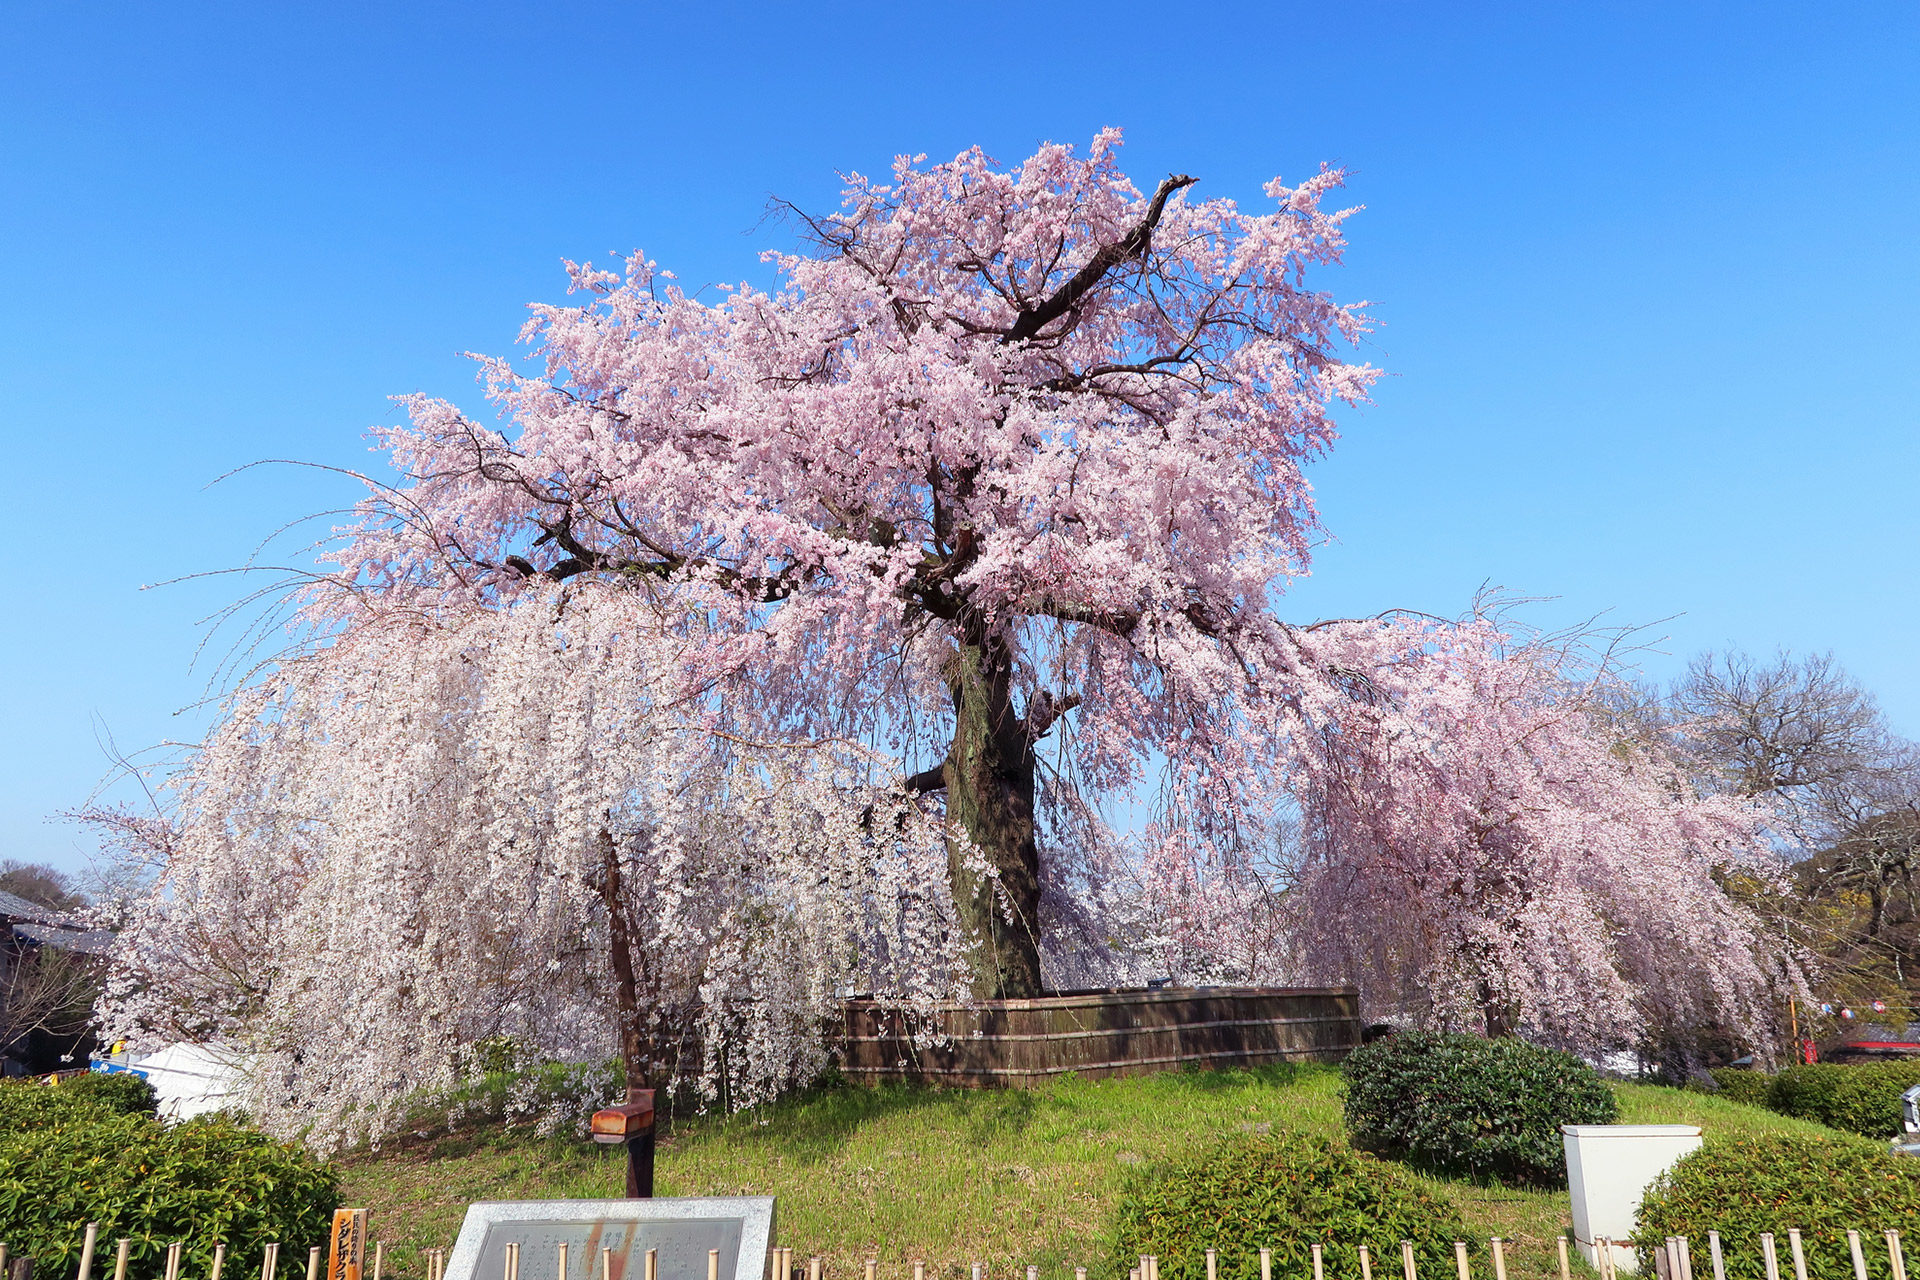 京都の桜を満喫するならば この公園がおすすめ Caedekyoto カエデ京都 紅葉と伝統美を引き継ぐバッグ